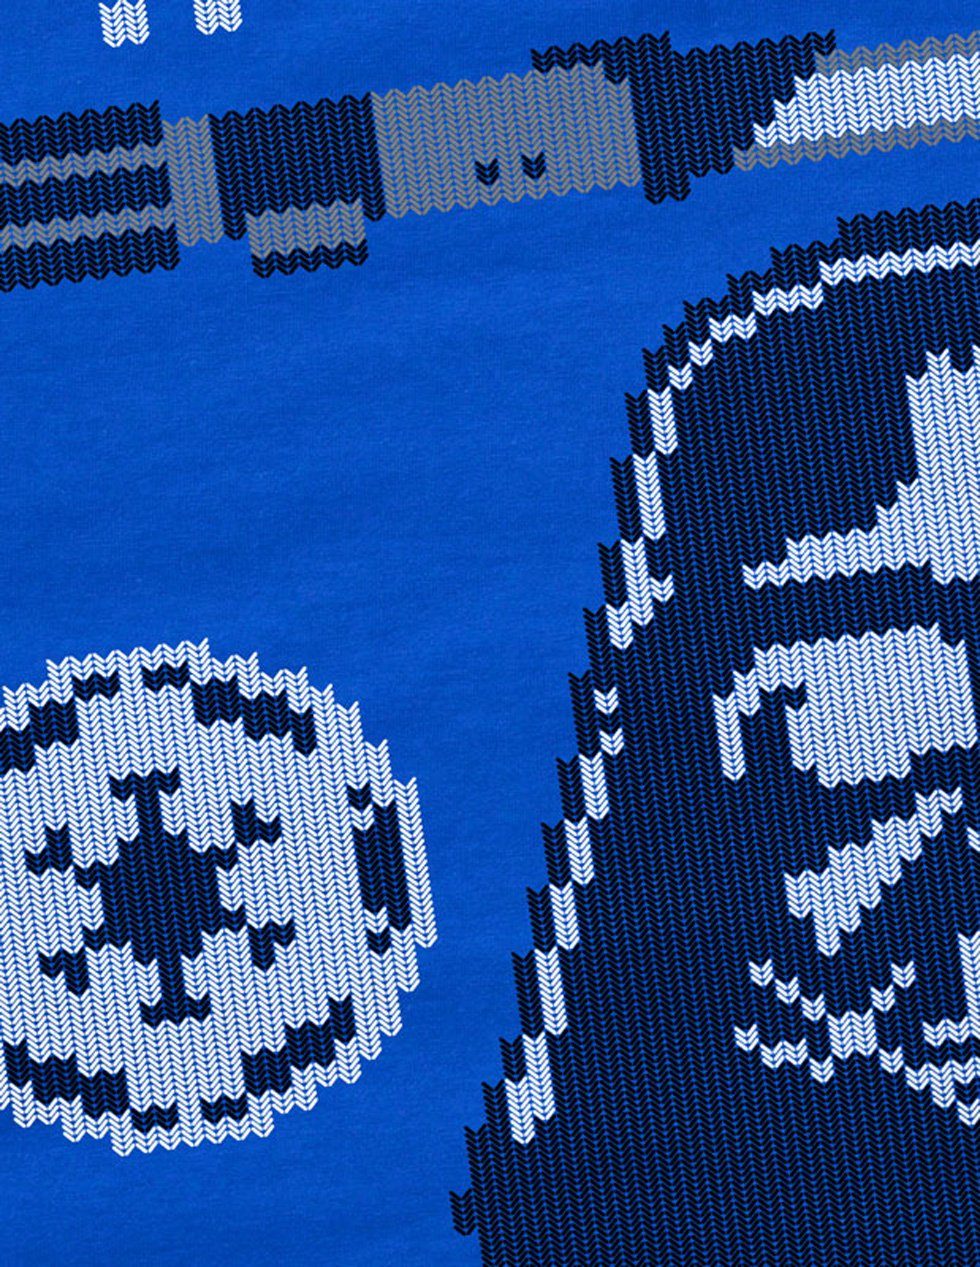 Cheer x-mas lichtschwert Print-Shirt weihnachtsbaum Herren vader blau style3 Sweater sith pulli T-Shirt Lack of Ugly